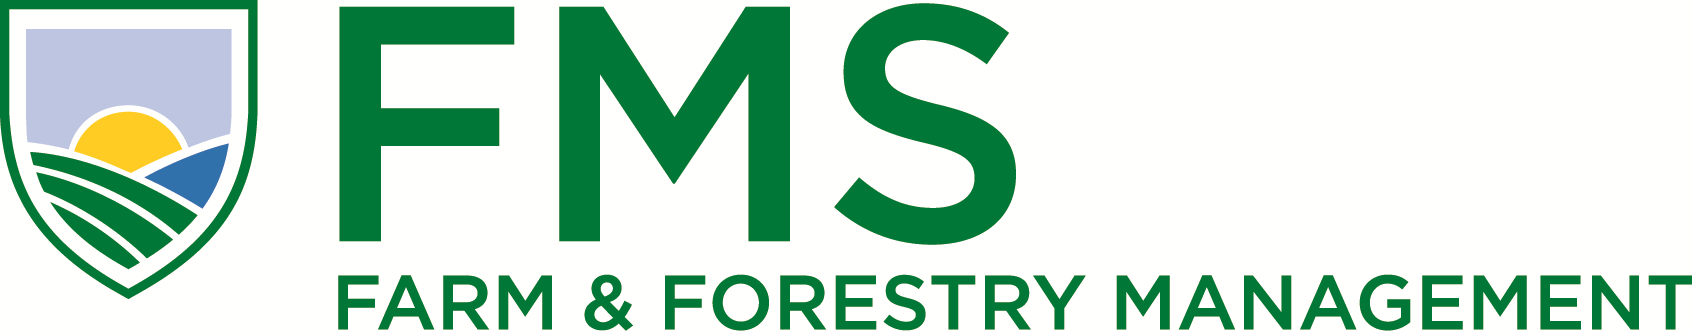 Resumo Público do Plano de Manejo Florestal Certificação em Grupo Farm and Forestry Management Services Brazil Consultoria Florestal